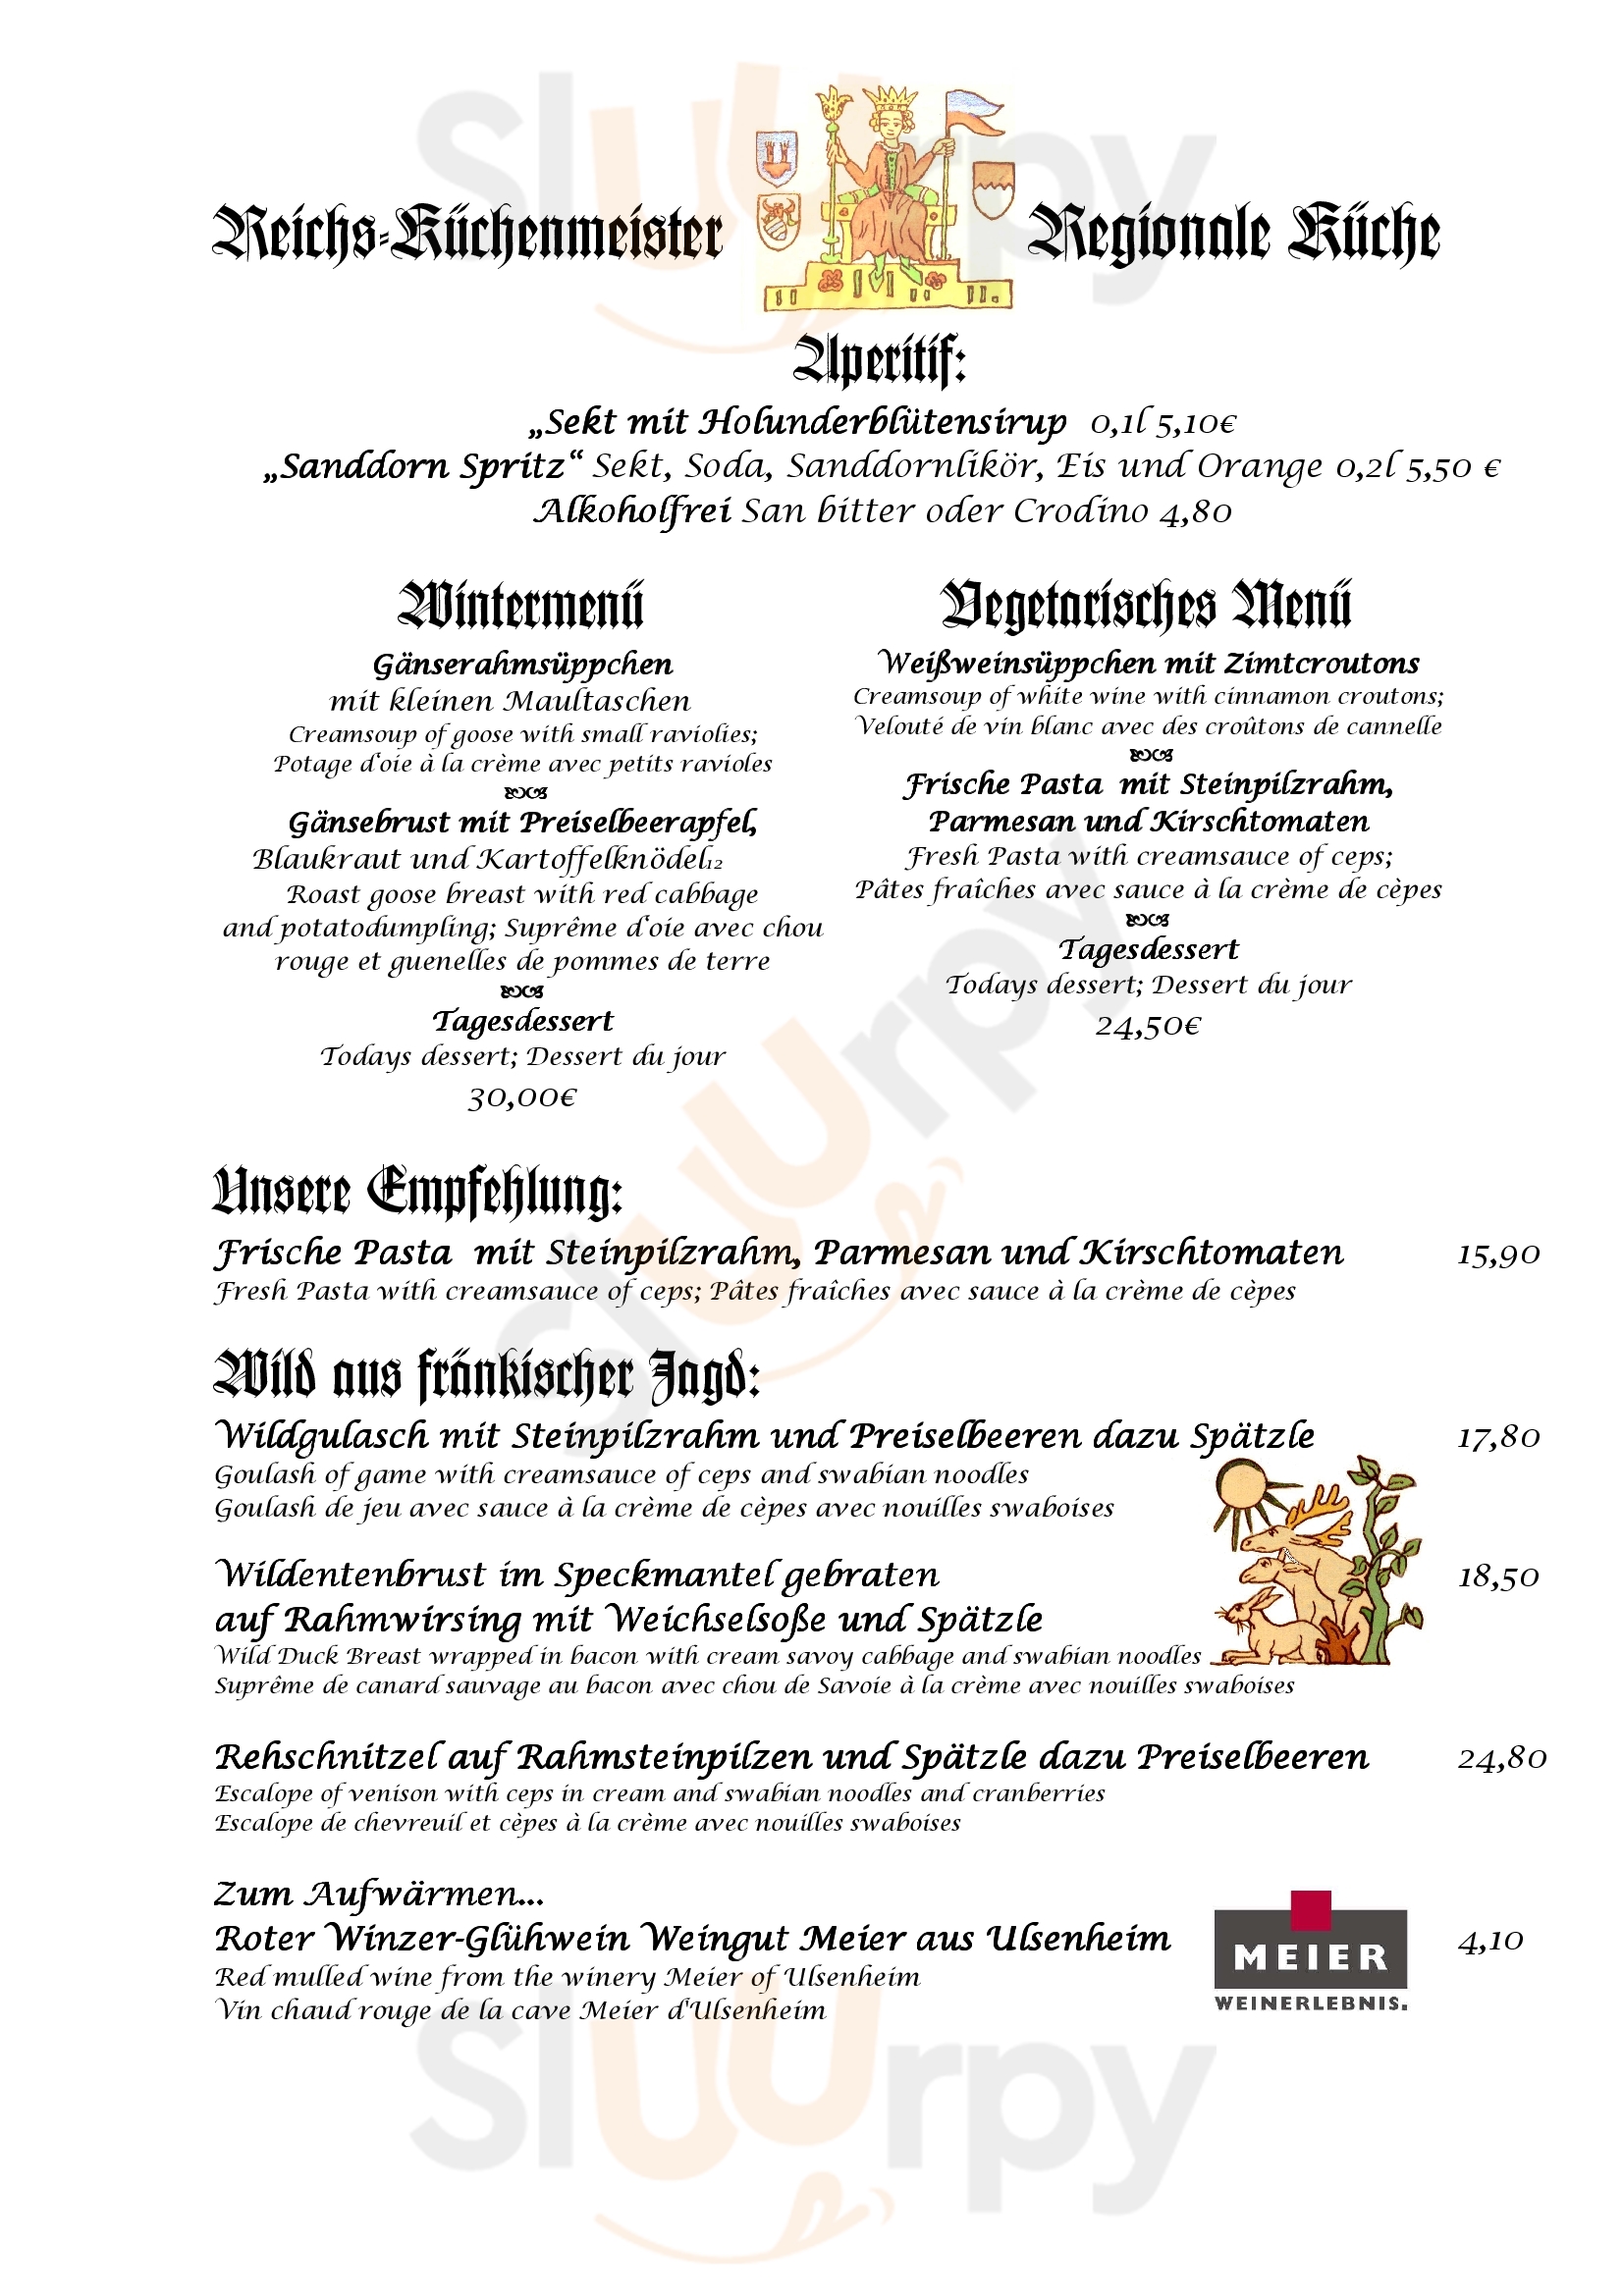 Der Reichskuchenmeister Restaurant Rothenburg Menu - 1